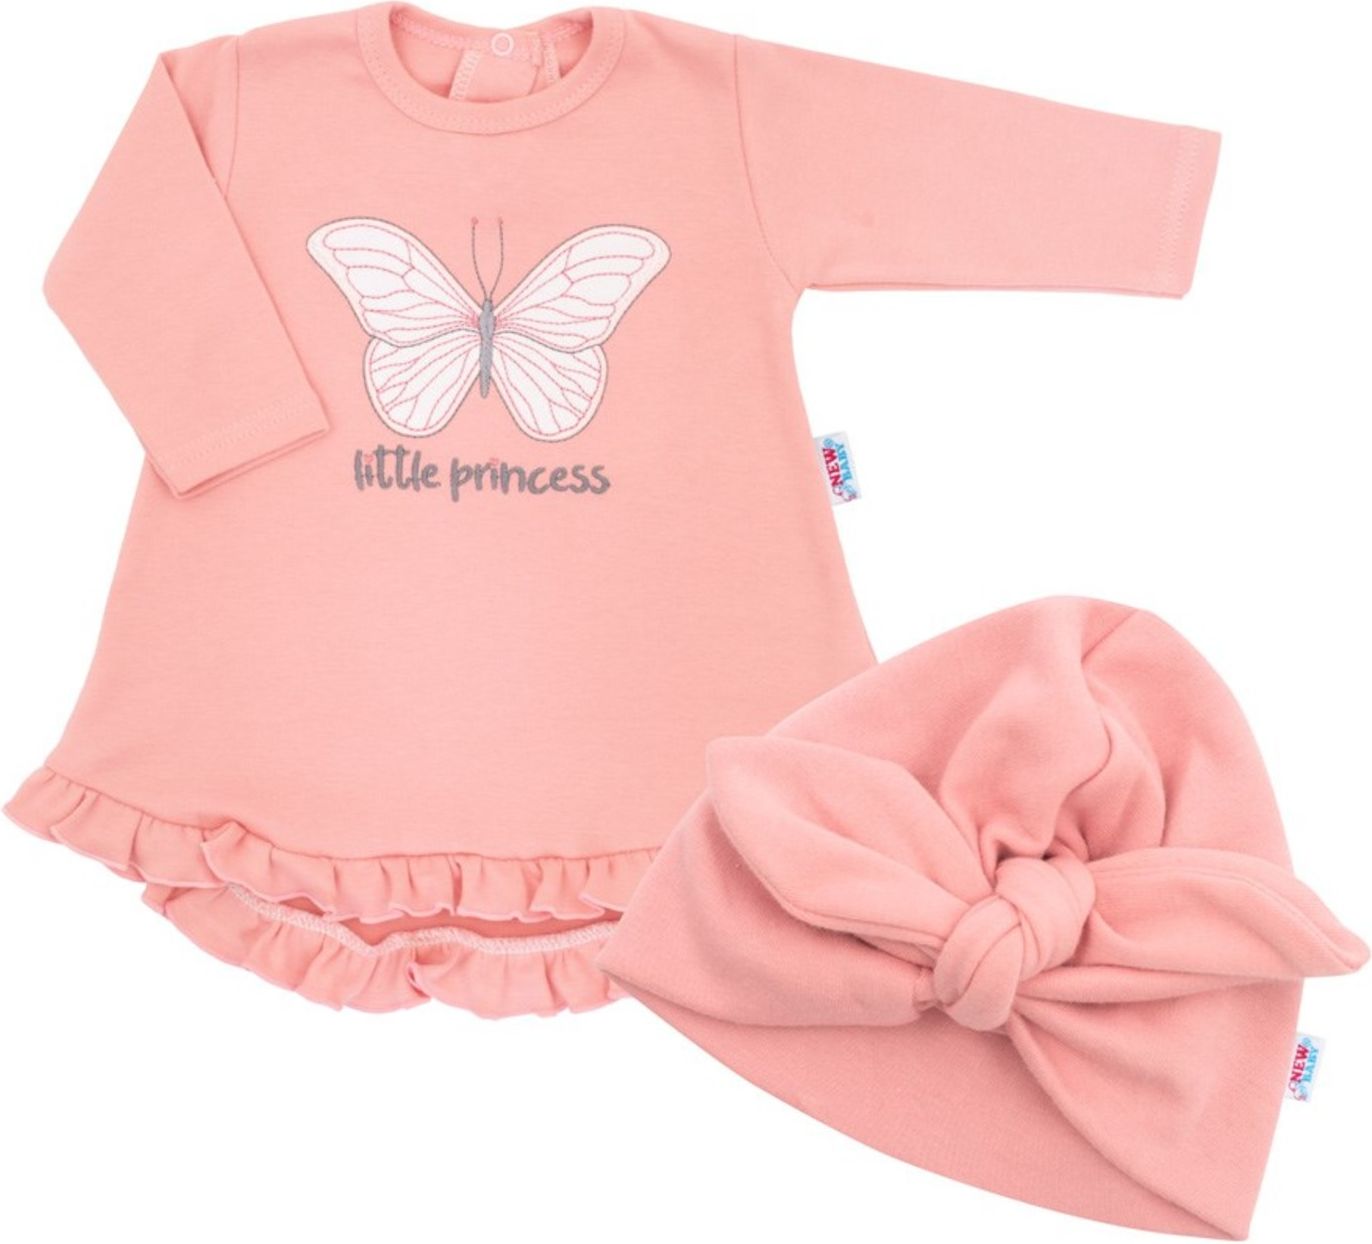 Kojenecké šatičky s čepičkou-turban New Baby Little Princess růžové - Kojenecké šatičky s čepičkou-turban New Baby Little Princess růžové - obrázek 1